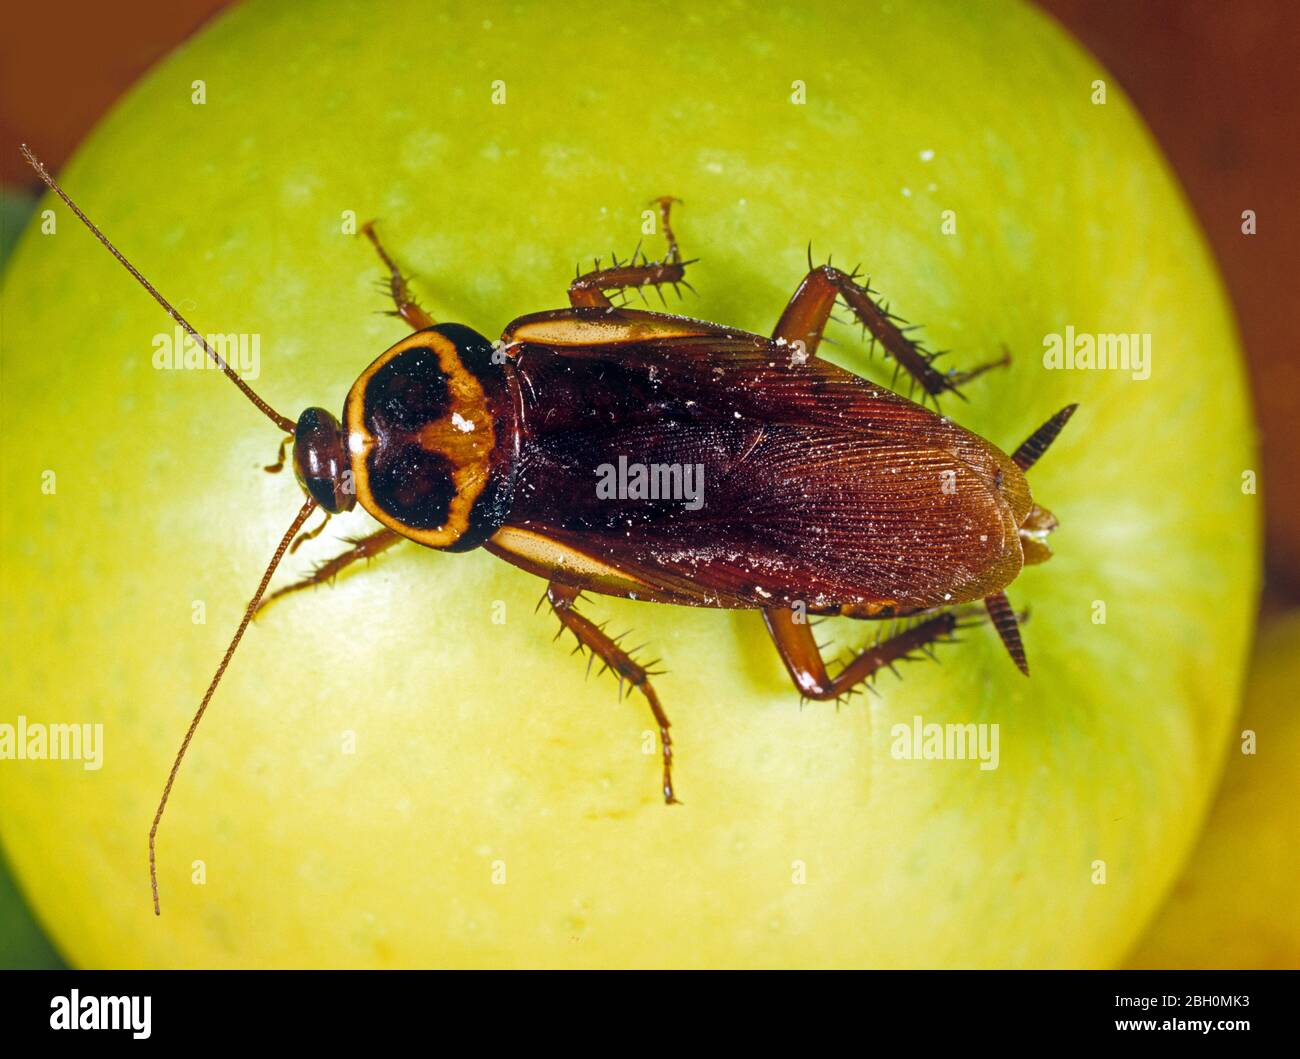 Cucaracha australiana (Periplaneta australsiae) peste adulta doméstica en una manzana Foto de stock